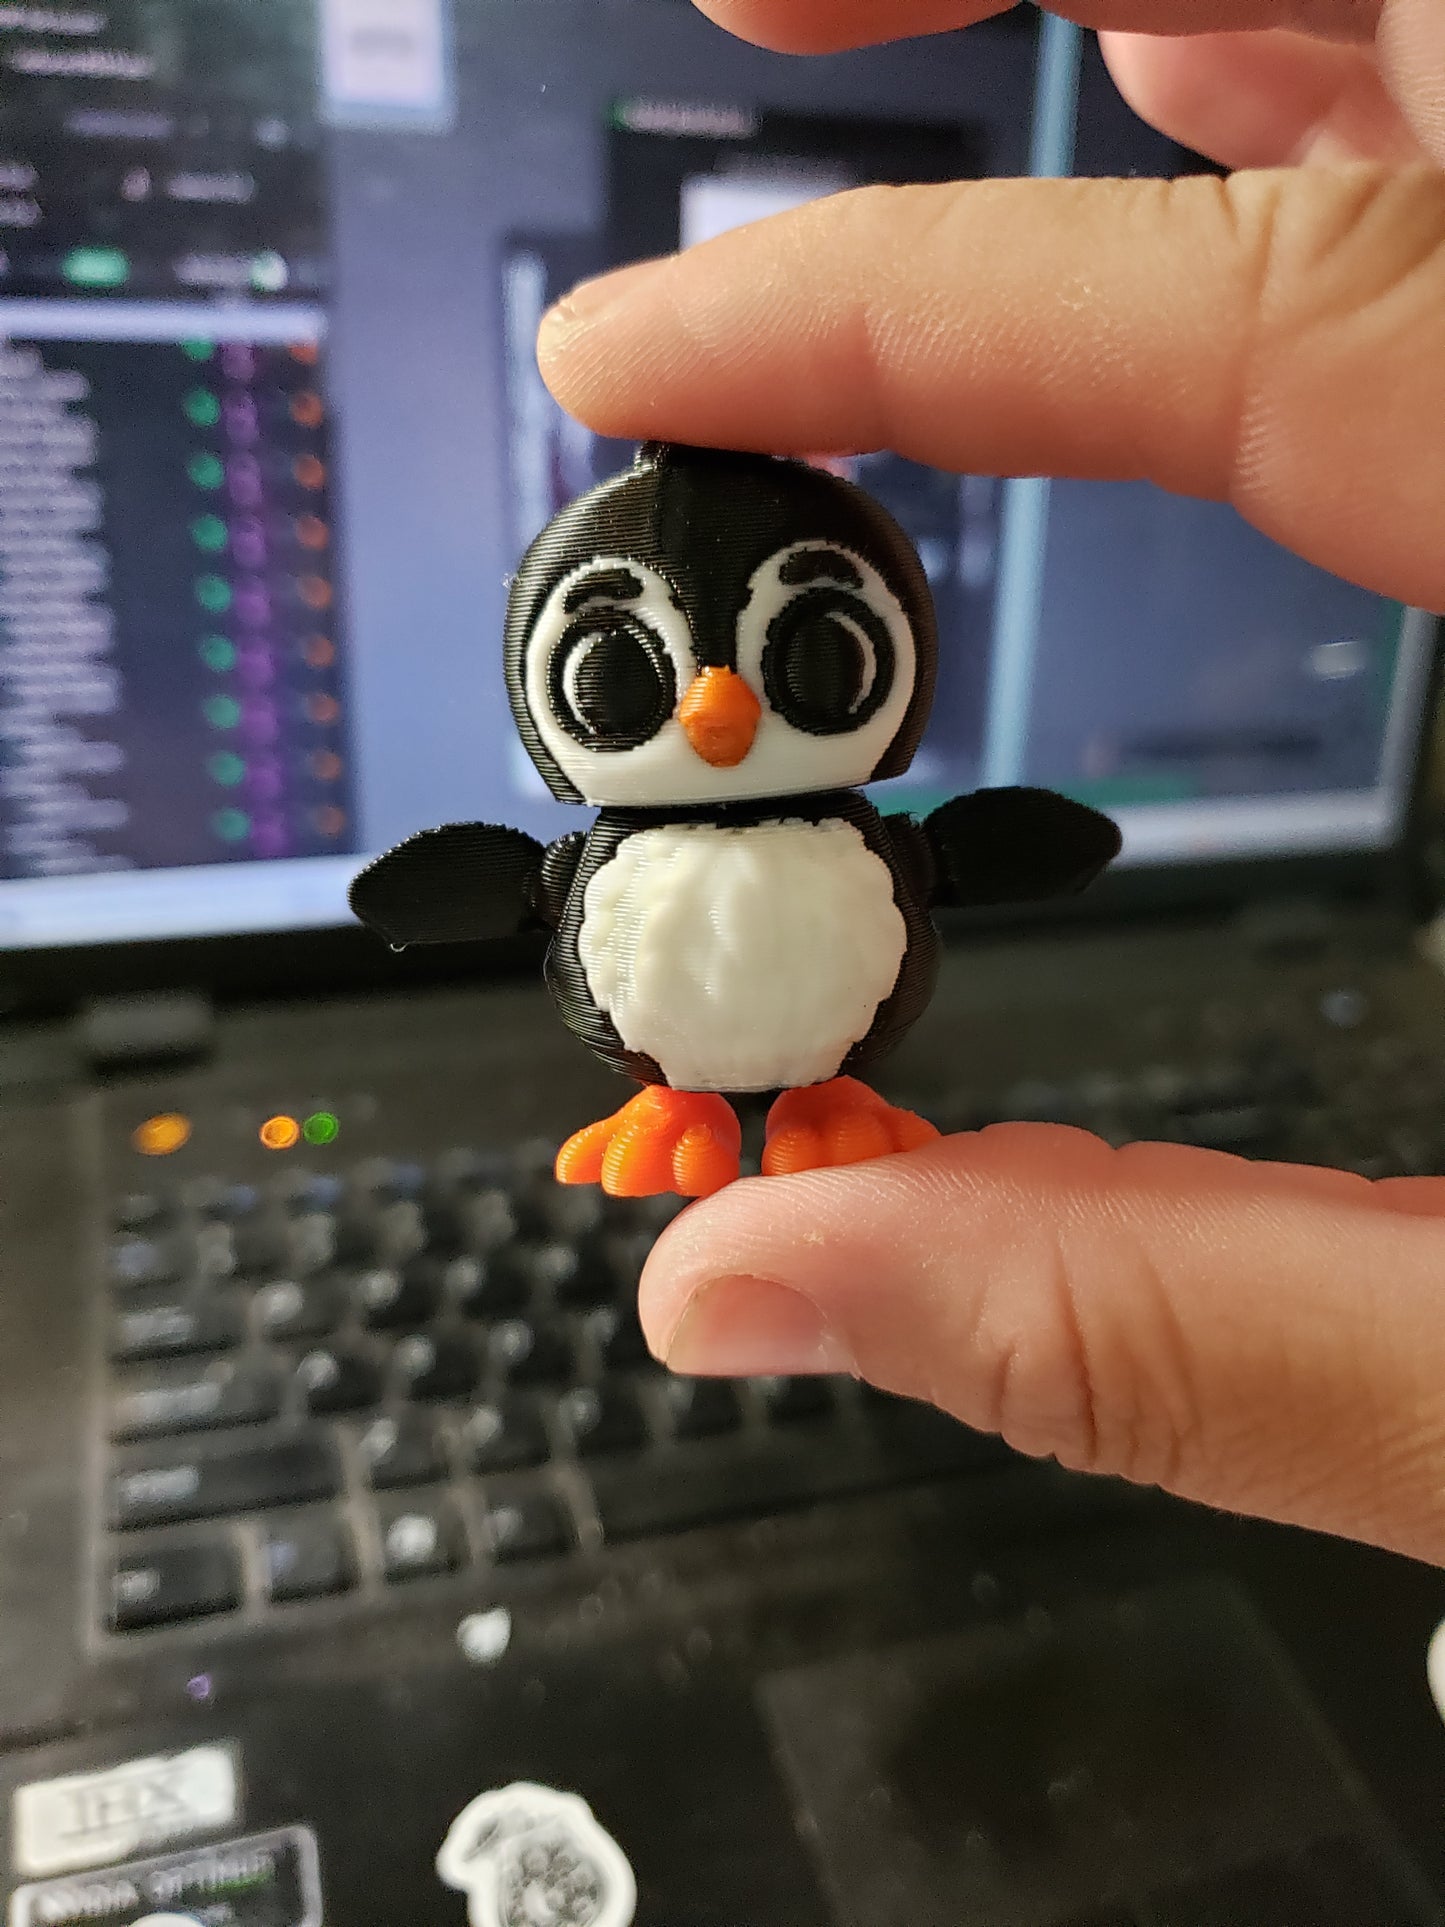 Penguin (pv)